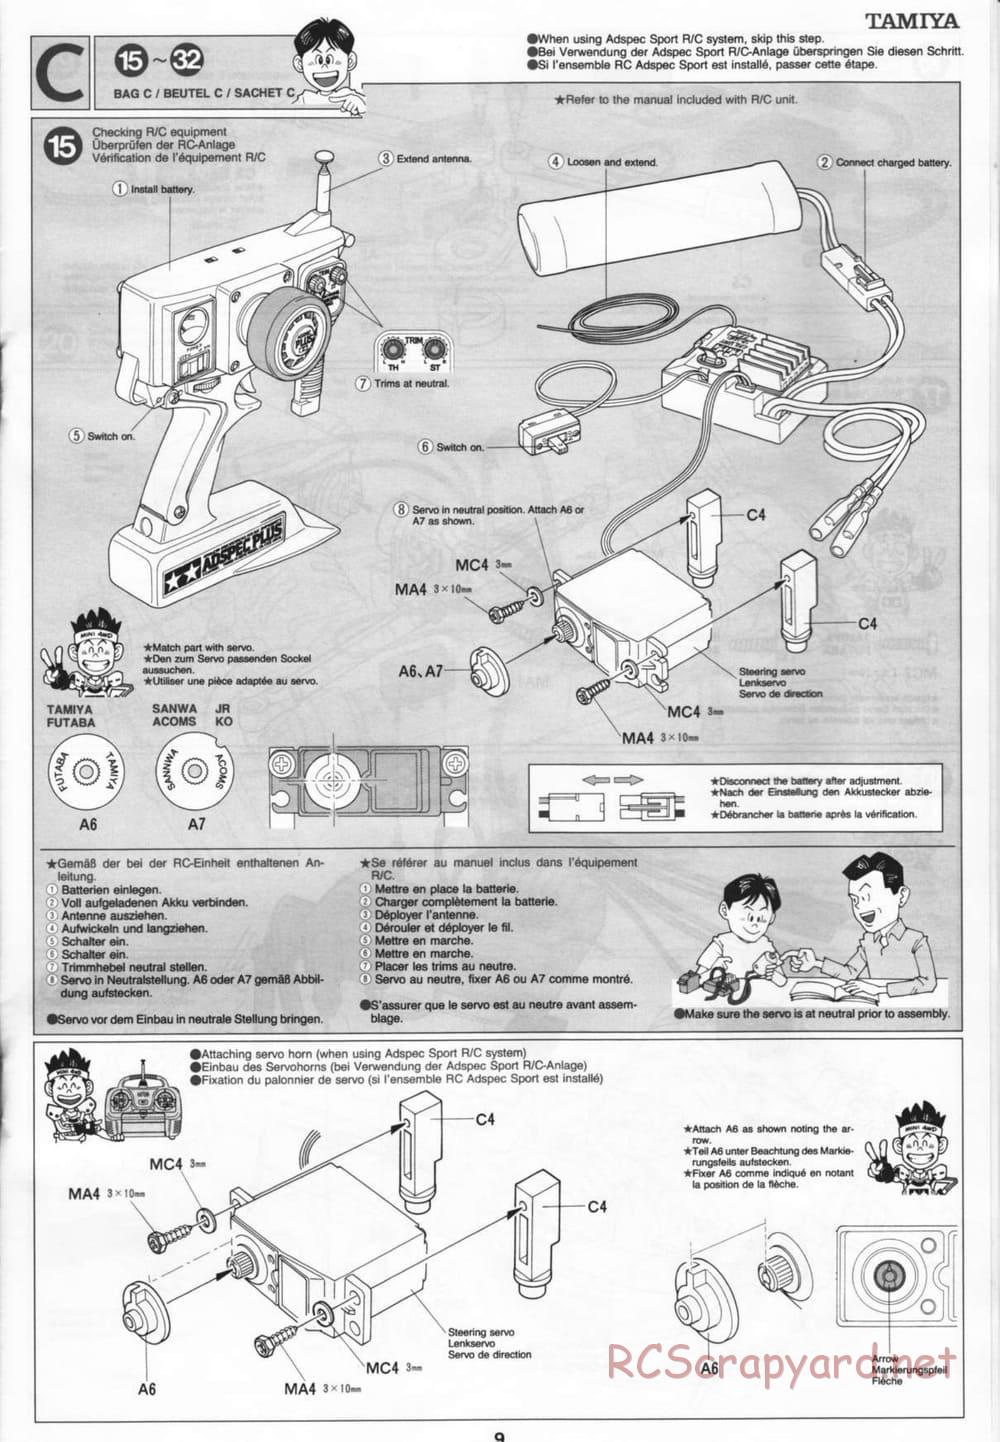 Tamiya - Thunder Blitz - Boy's 4WD Chassis - Manual - Page 9